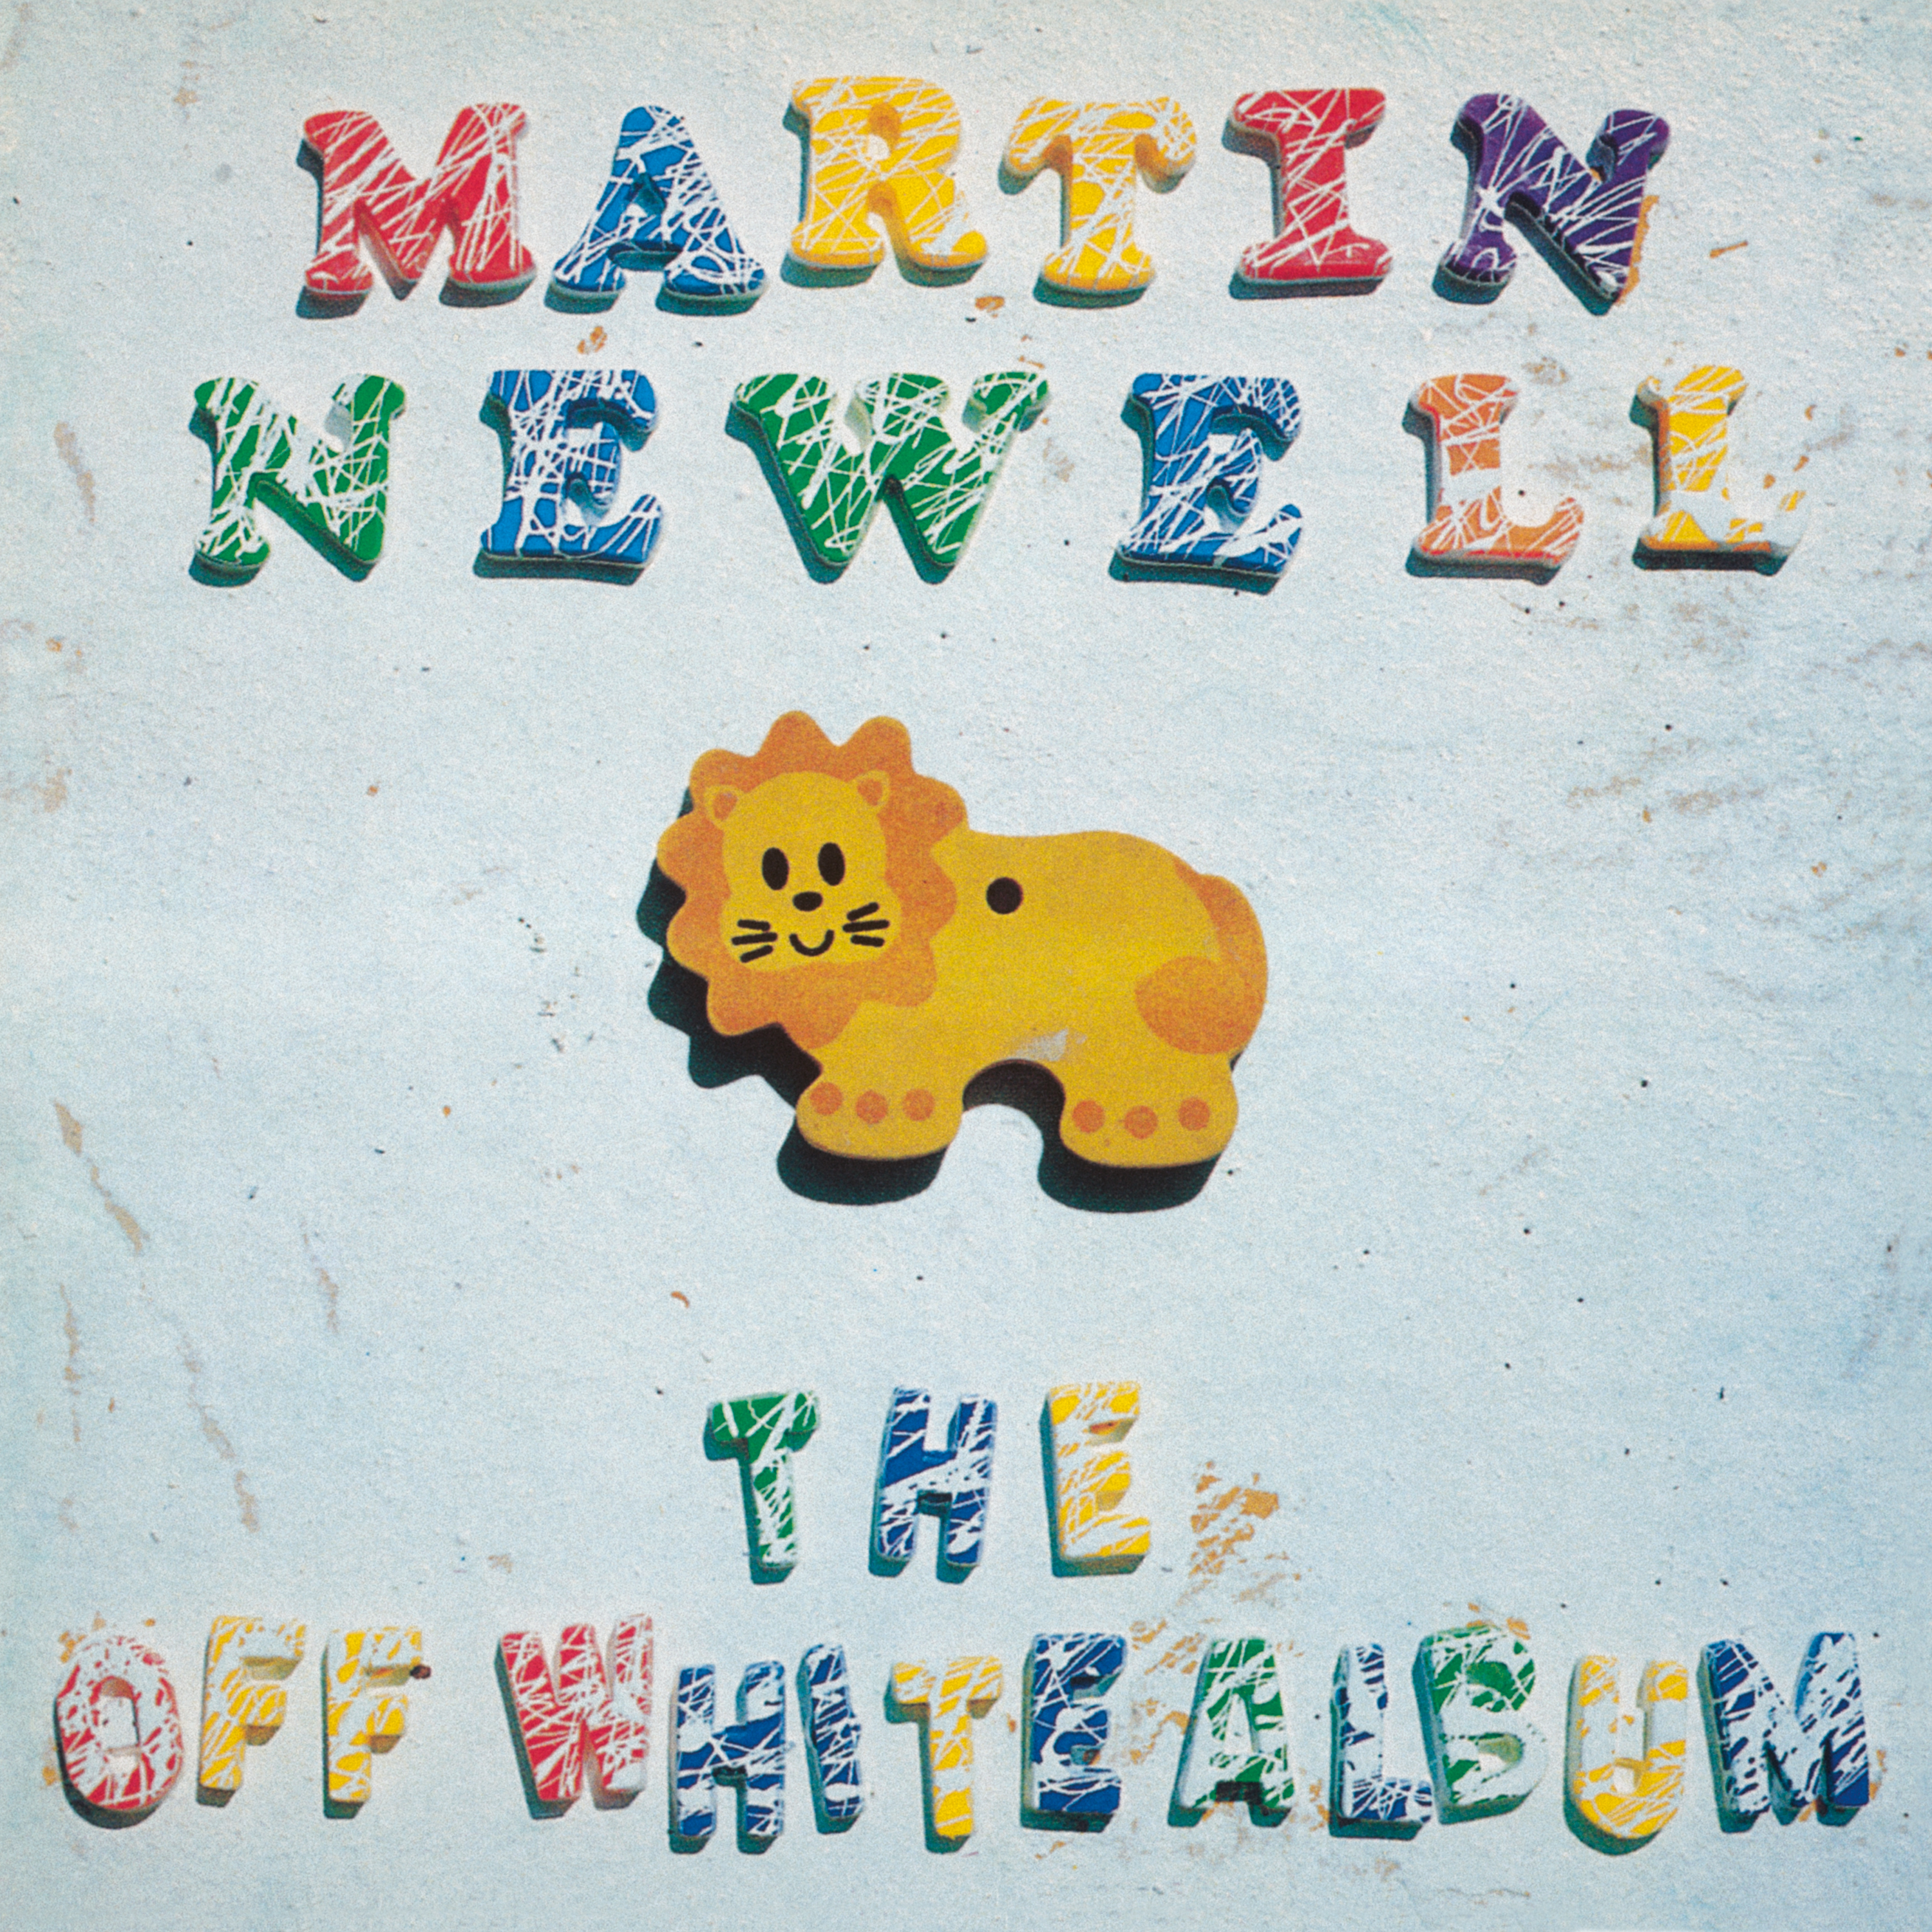 Martin Newell - The Off White Album (White vinyl)